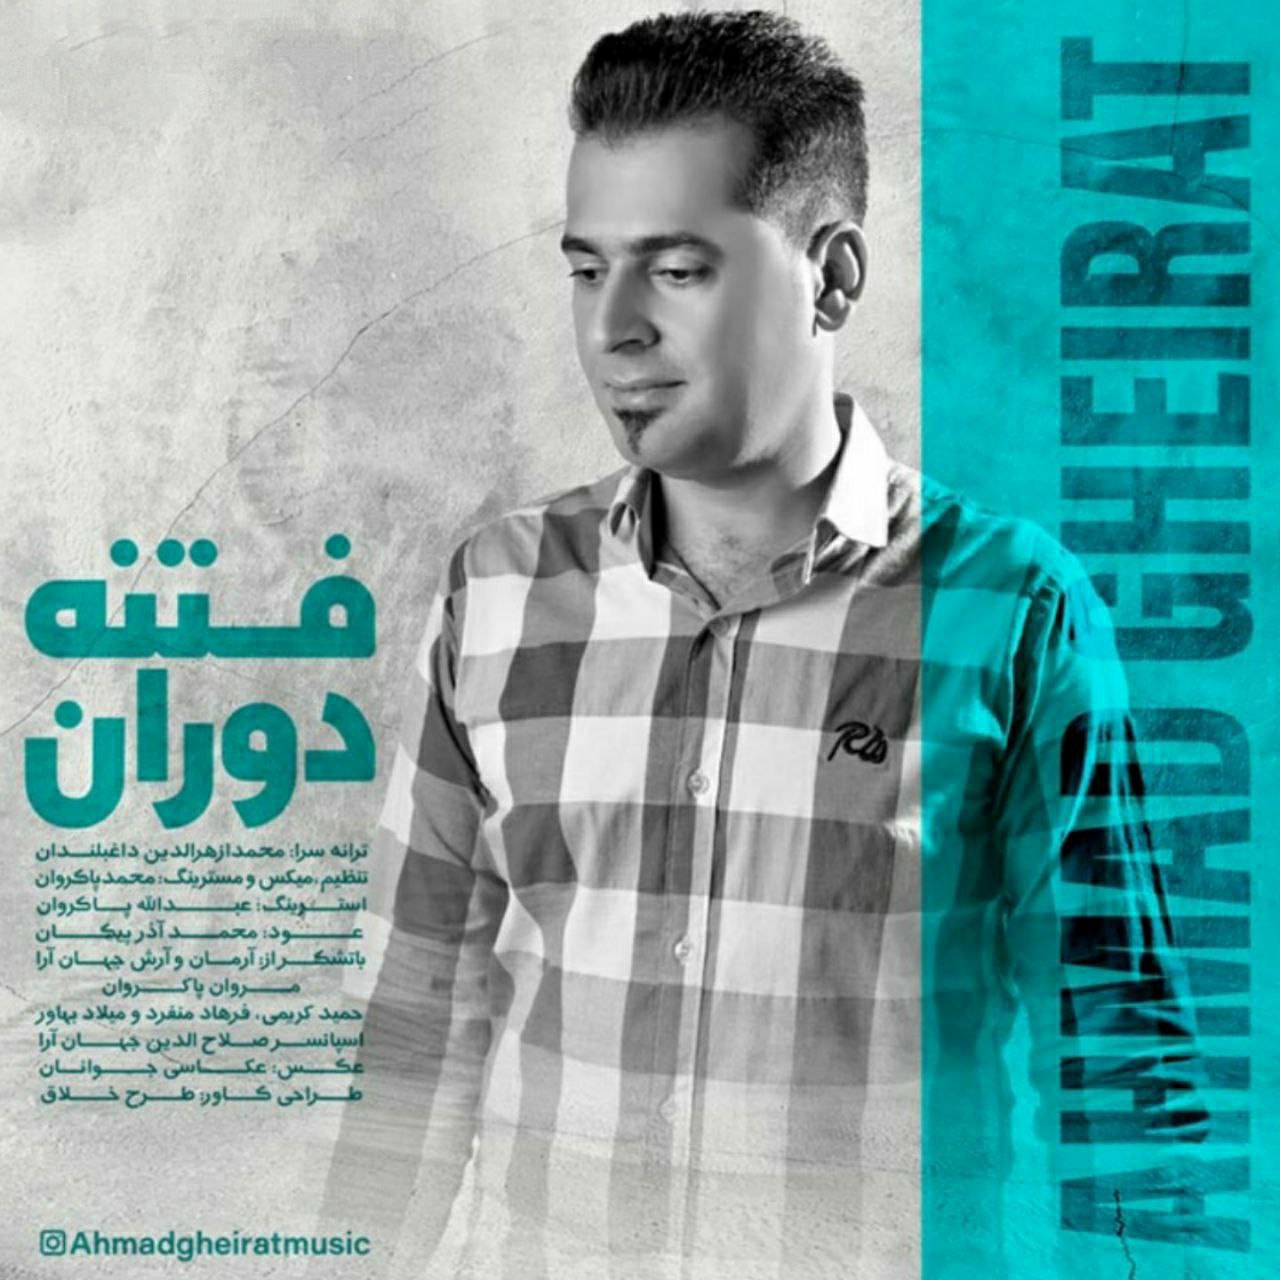 دانلود آهنگ جدید احمد غیرت به نام فتنه دوران